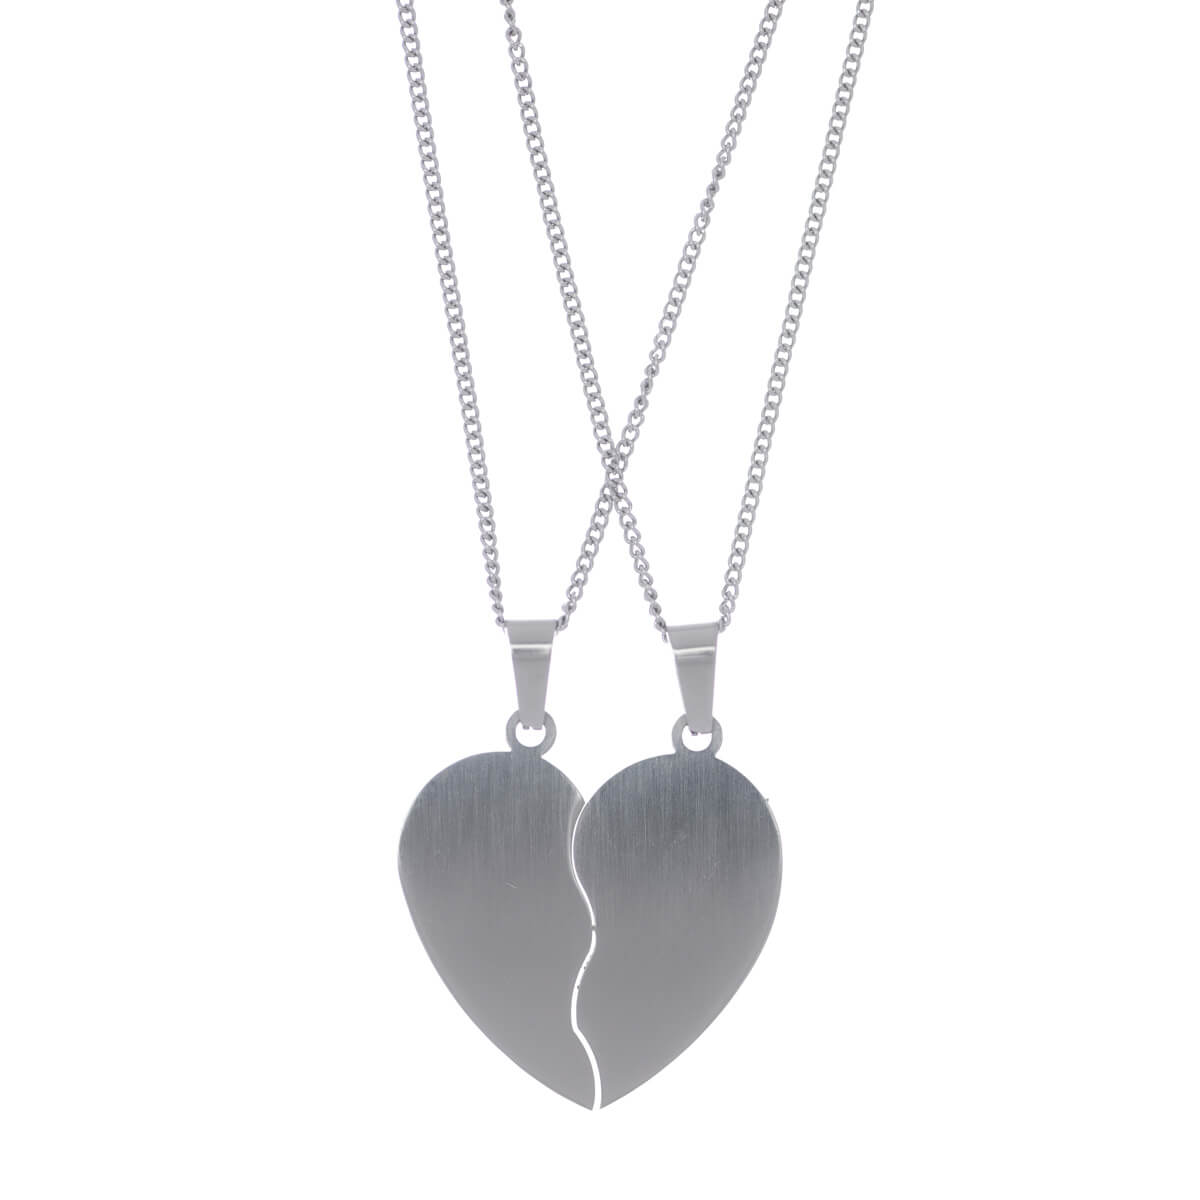 Best Friends pendant necklace (steel316L)